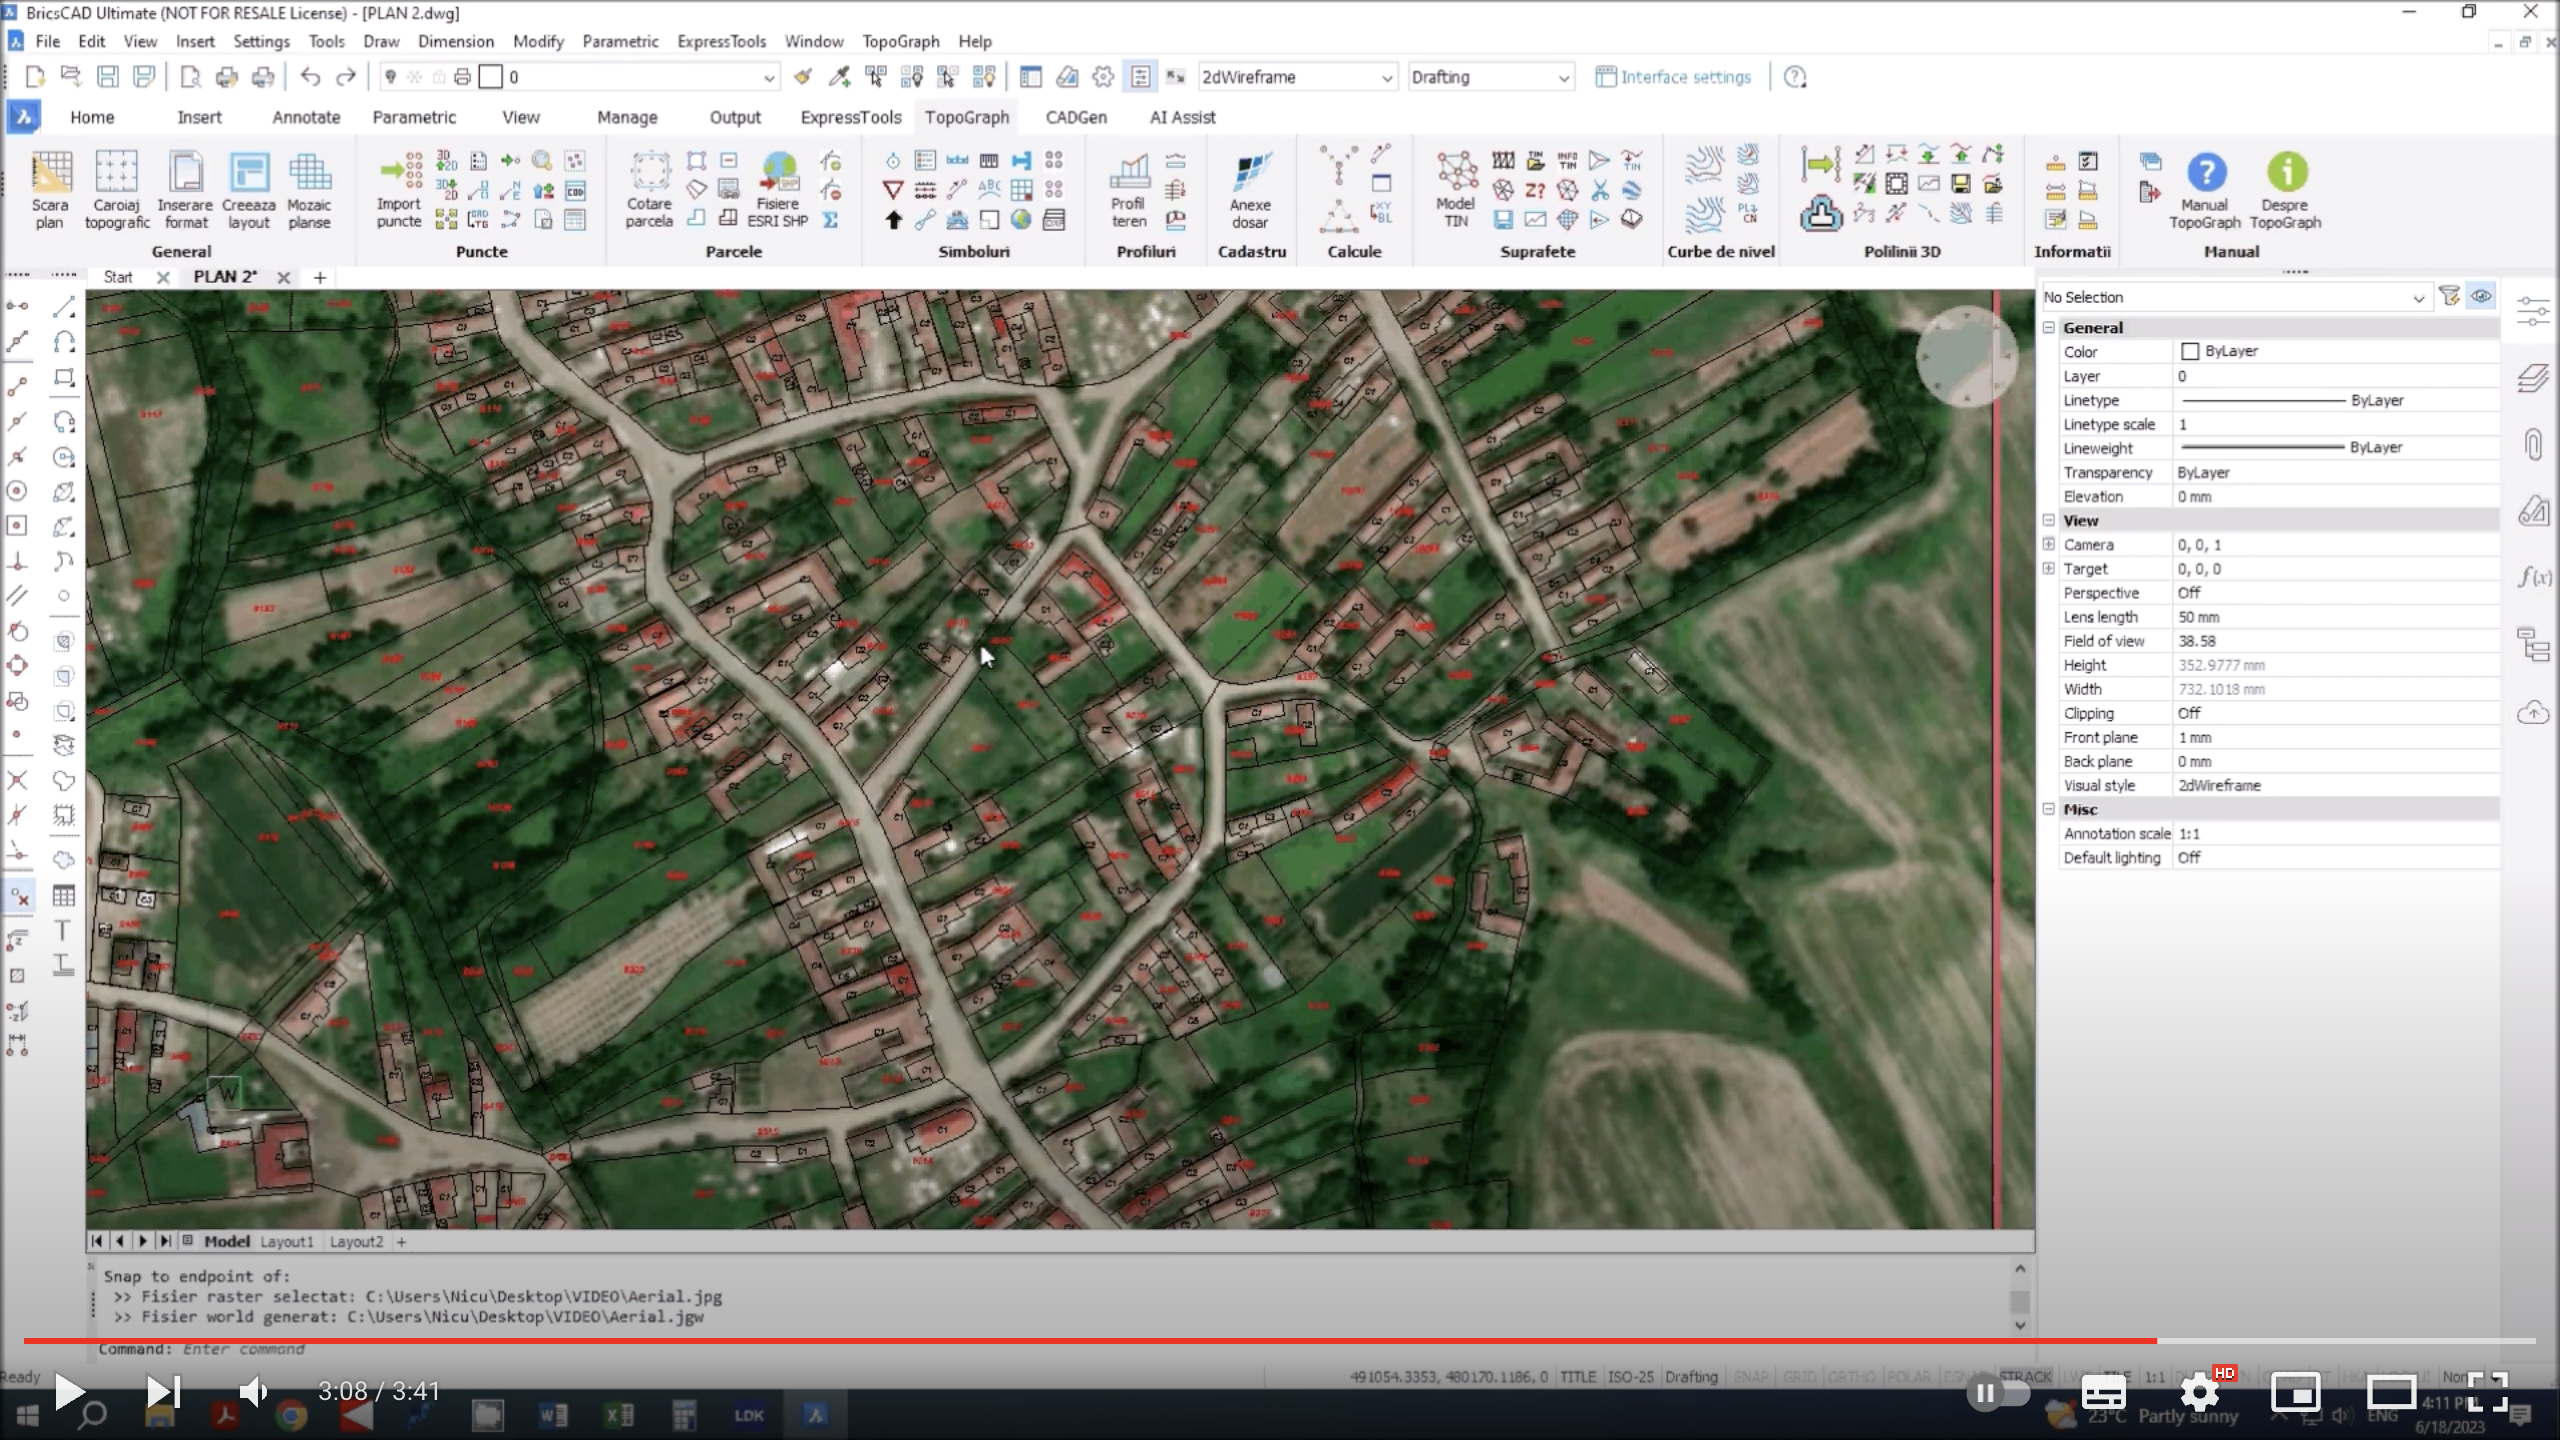 🎬 Tutorial Video - Descrierea etapelor necesare pentru descarcarea si salvarea unei imagini aeriene de tip jpeg, cu dimensiunea de 2000x1500 de pixeli folosind serviciul online Microsoft Bing Maps si aplicatia Topograph